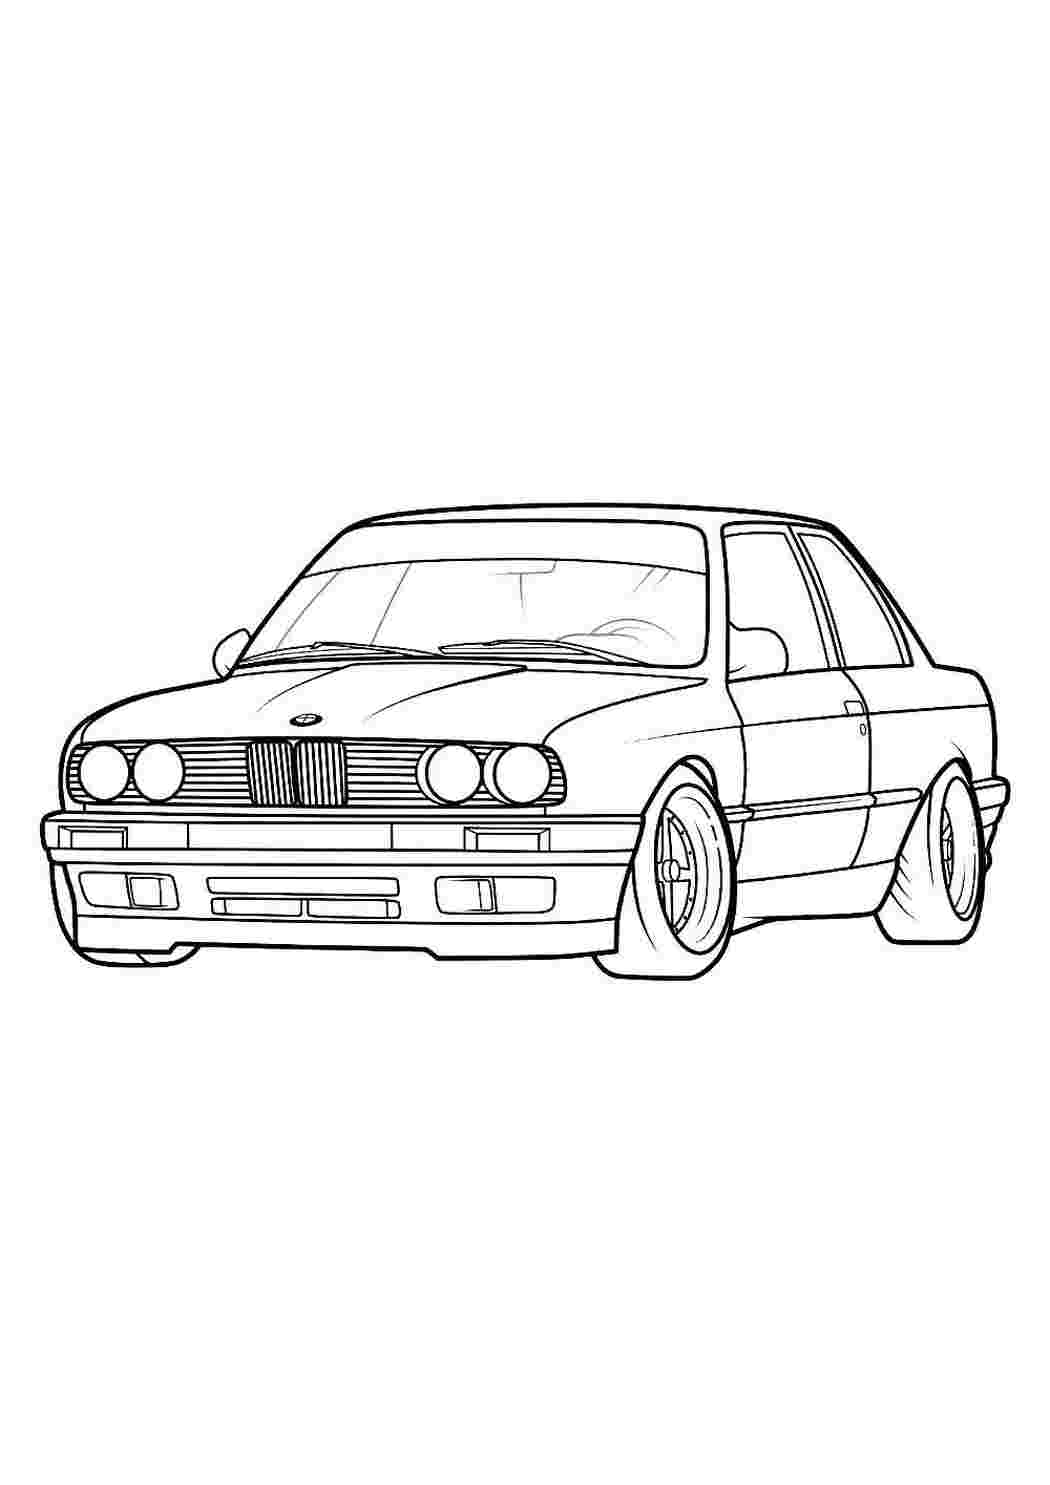 Рисунок BMW X1 - дизайн джипа, скетч внедорожника